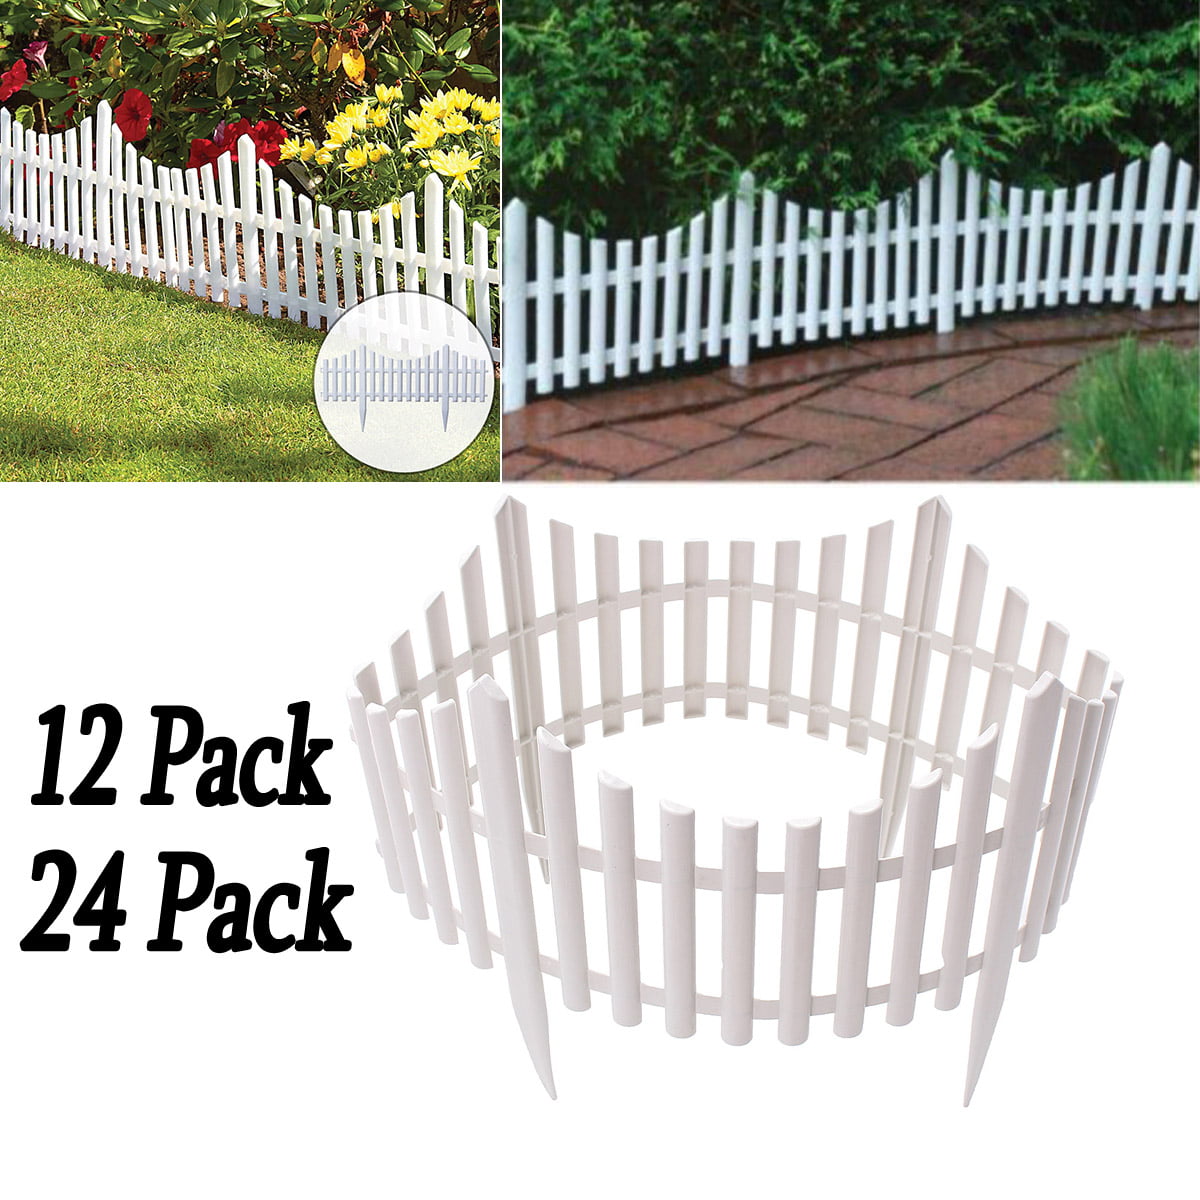 4 pack Woodside White Decorative Plastic Garden Fence Panels Border Edging